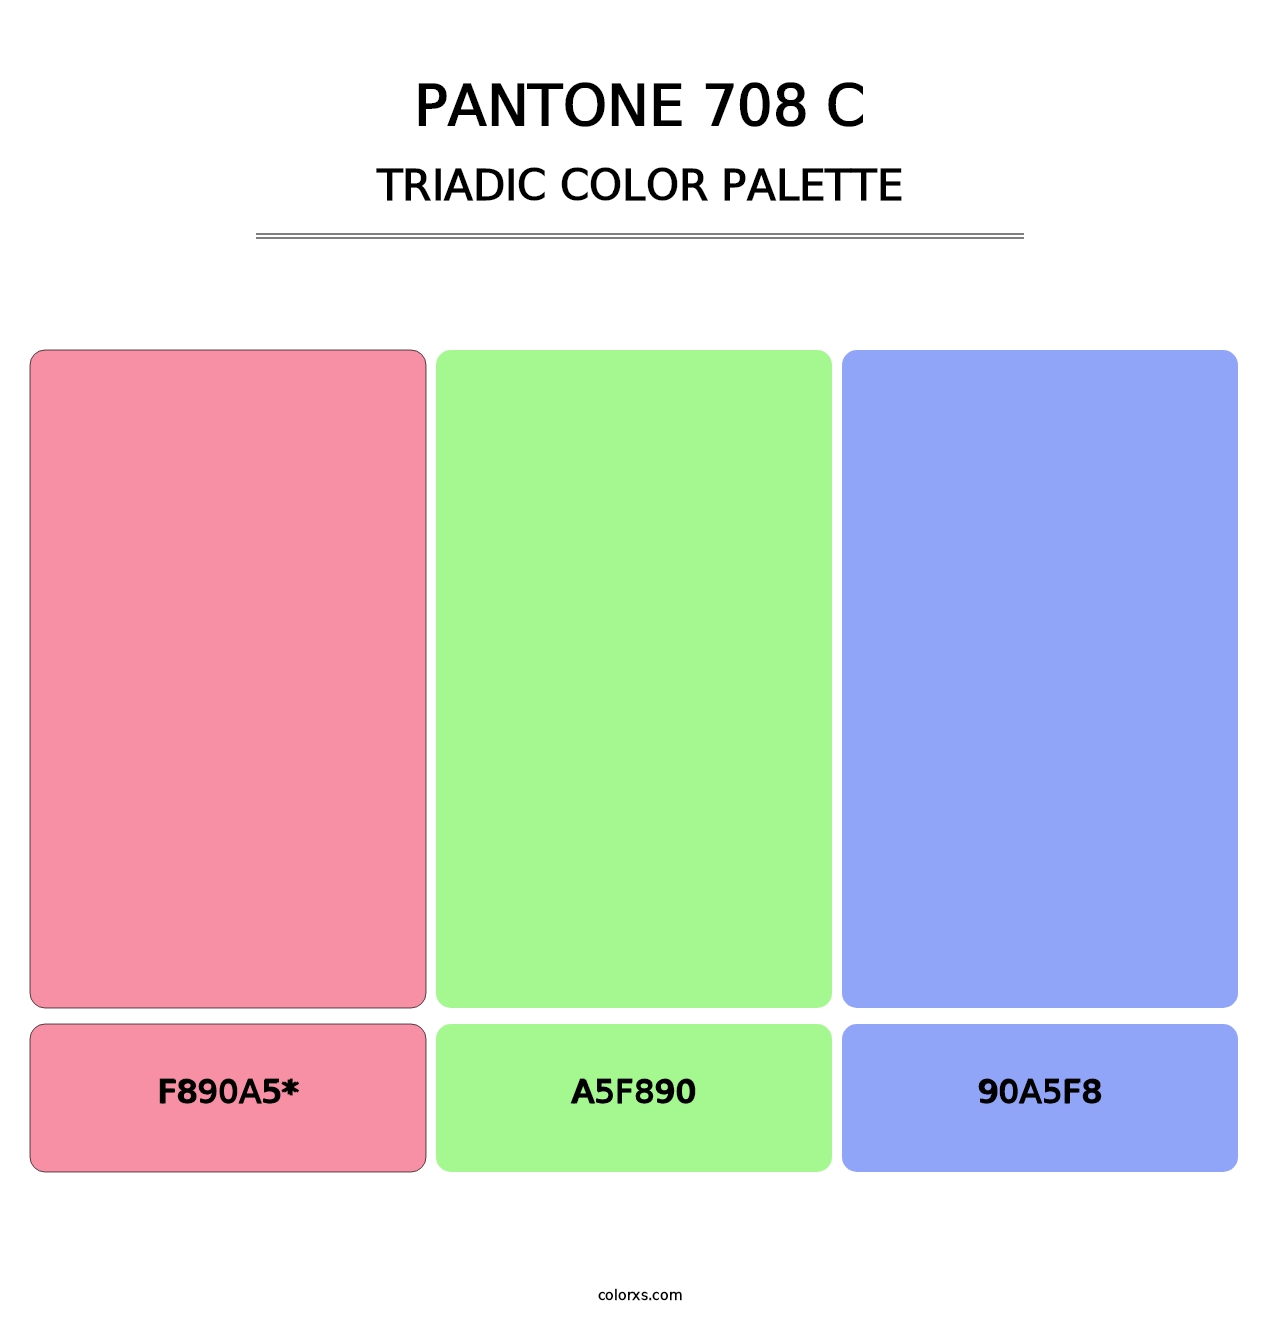 PANTONE 708 C - Triadic Color Palette